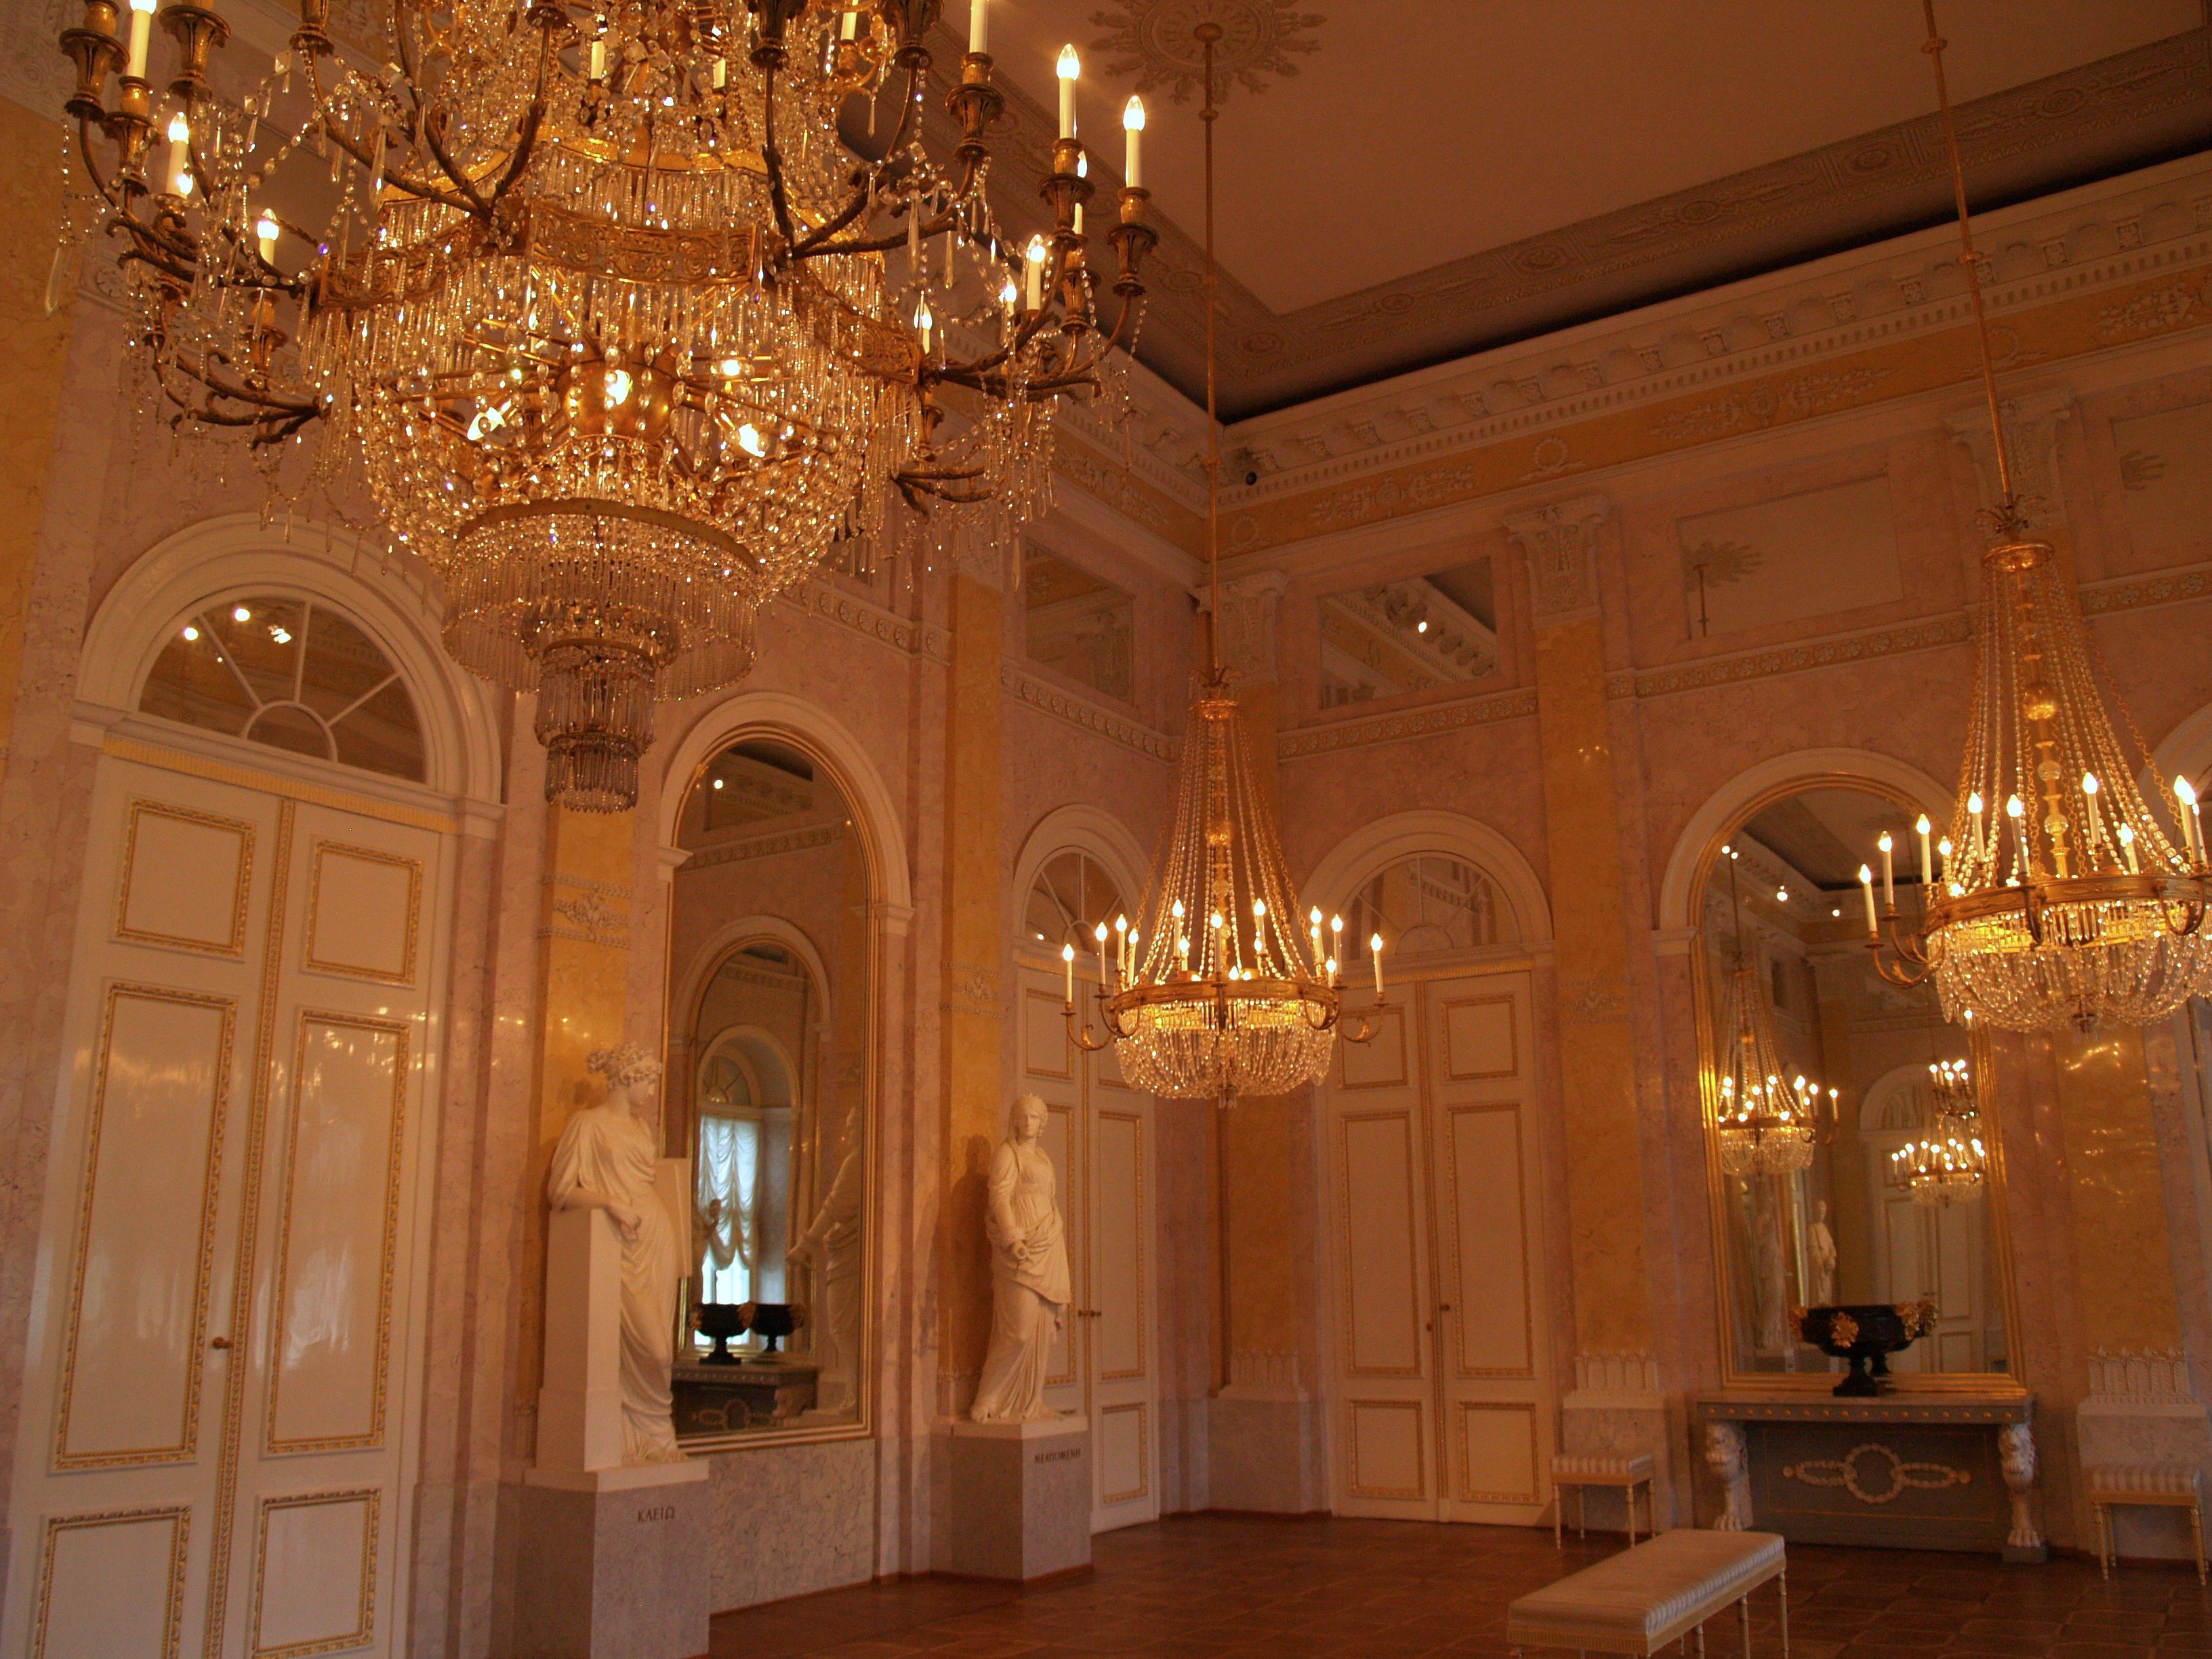 オーストリア・ウィーン観光で行くべき「ハプスブルク家の王宮」の見どころ紹介